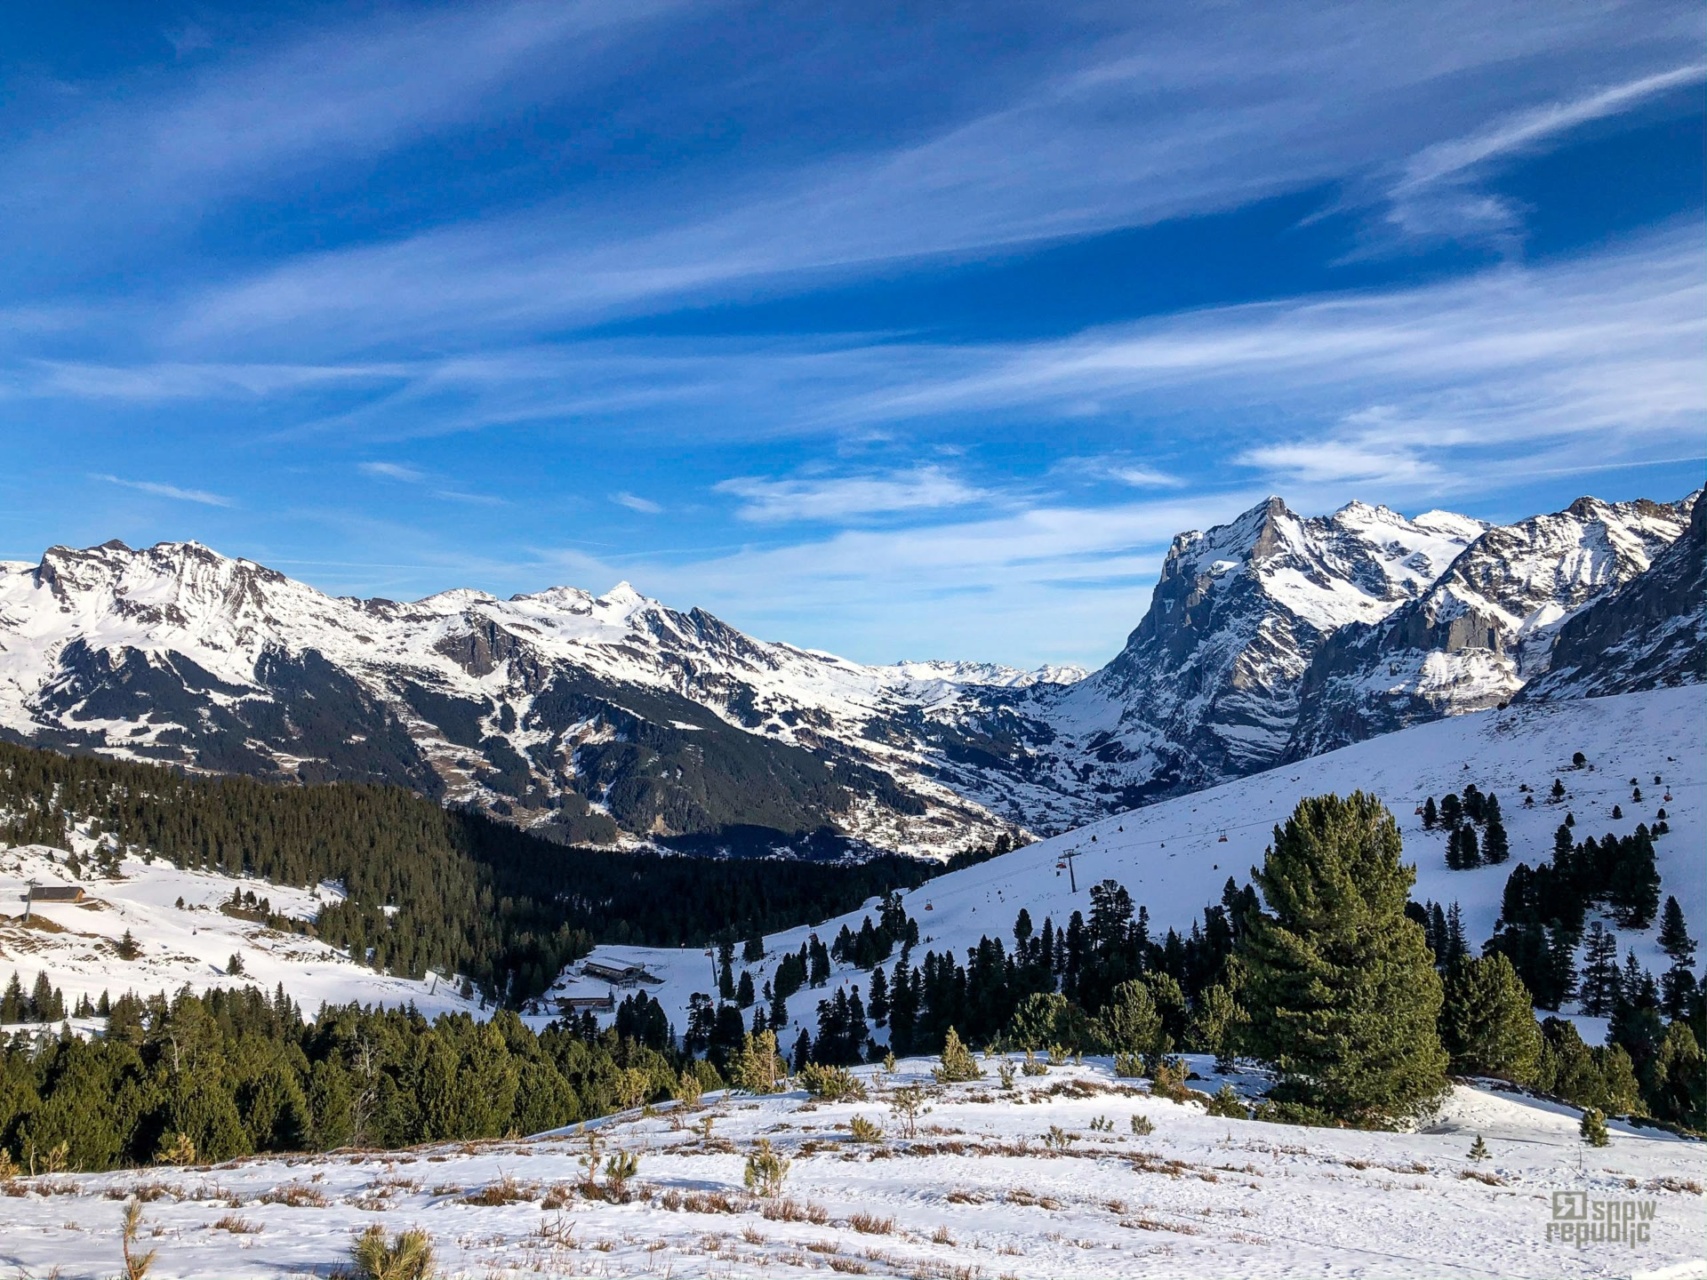 Alpenweerbericht | Zeer zachte jaarwisseling